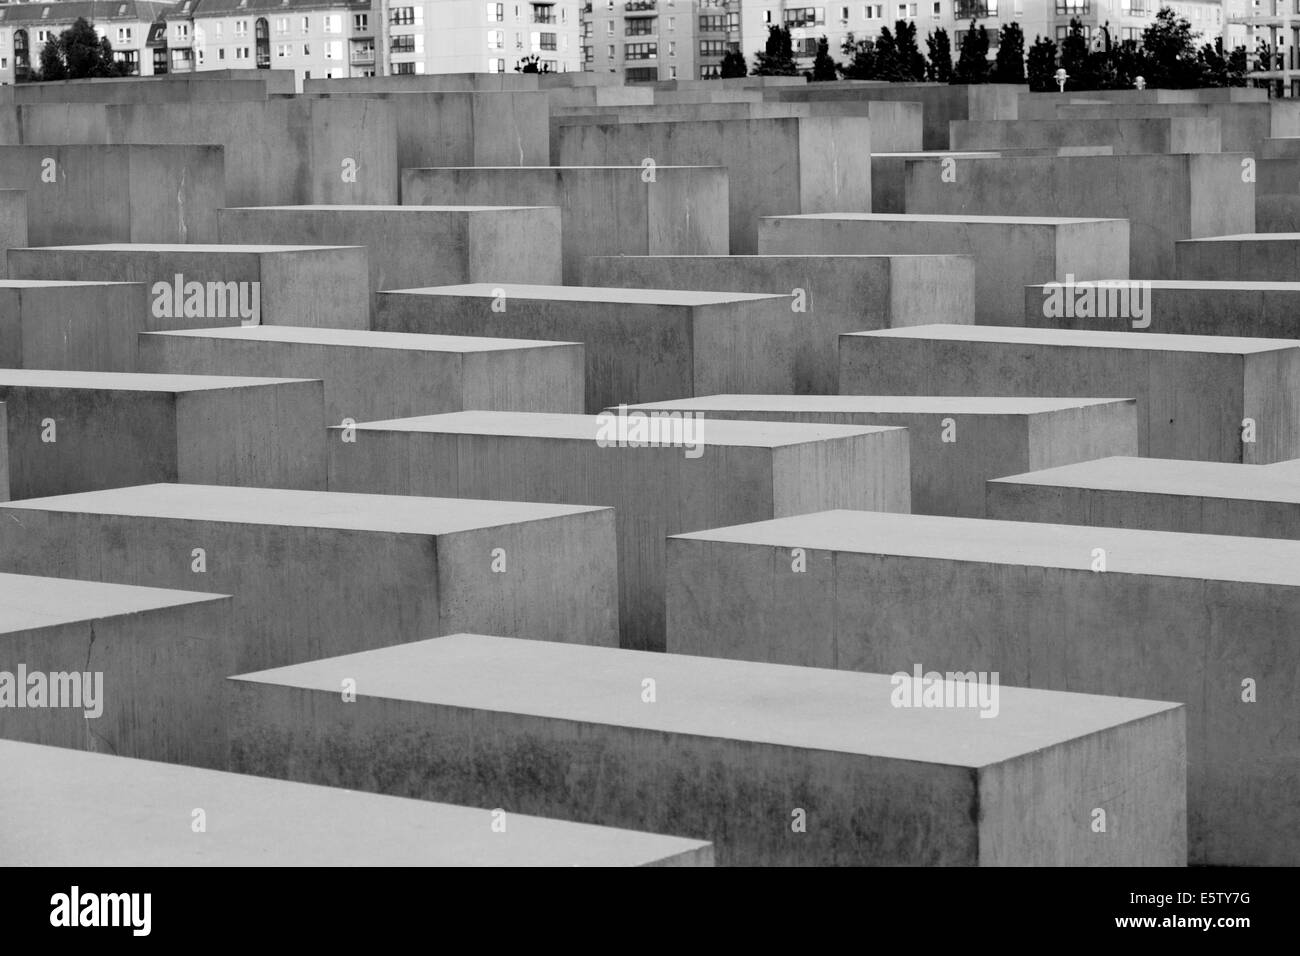 Mémorial de l'holocauste juif, Berlin, Allemagne Banque D'Images